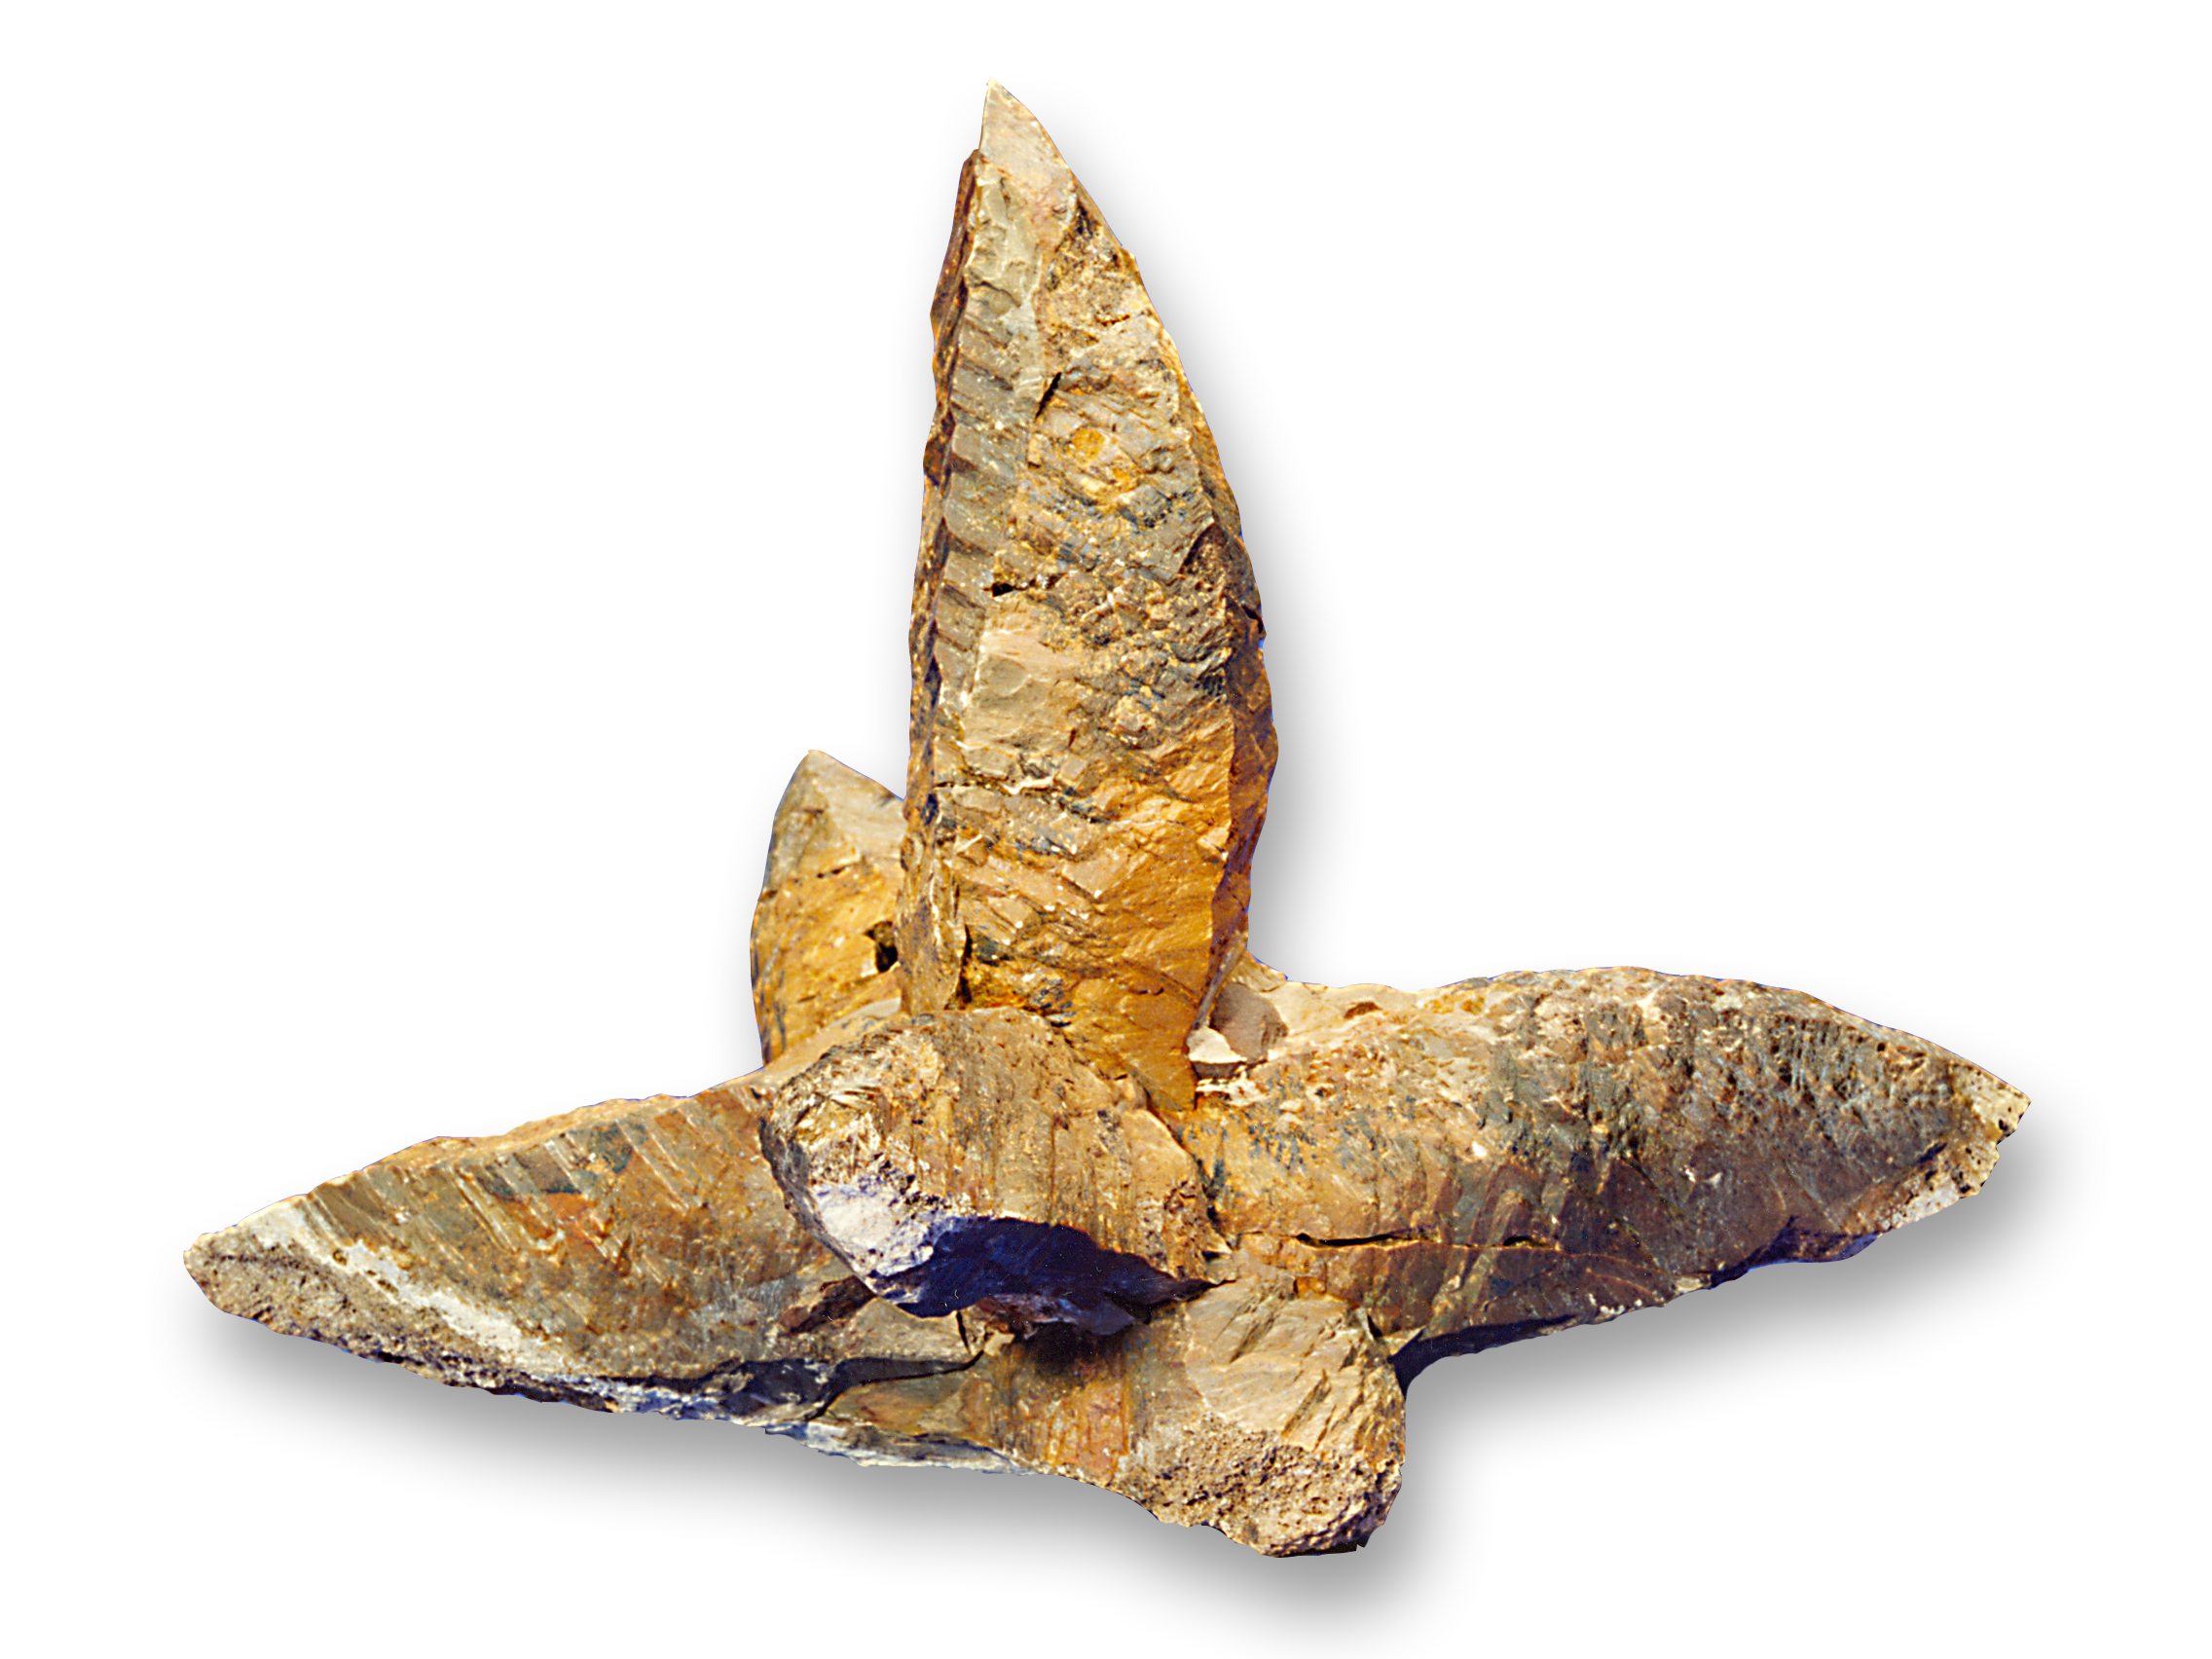 Verdens ubetinget største glendonit med en diameter på 1,6 meter blev fundet af museumsformidler Henrik Madsen fra Fossil- og Molermuseet på Mors.